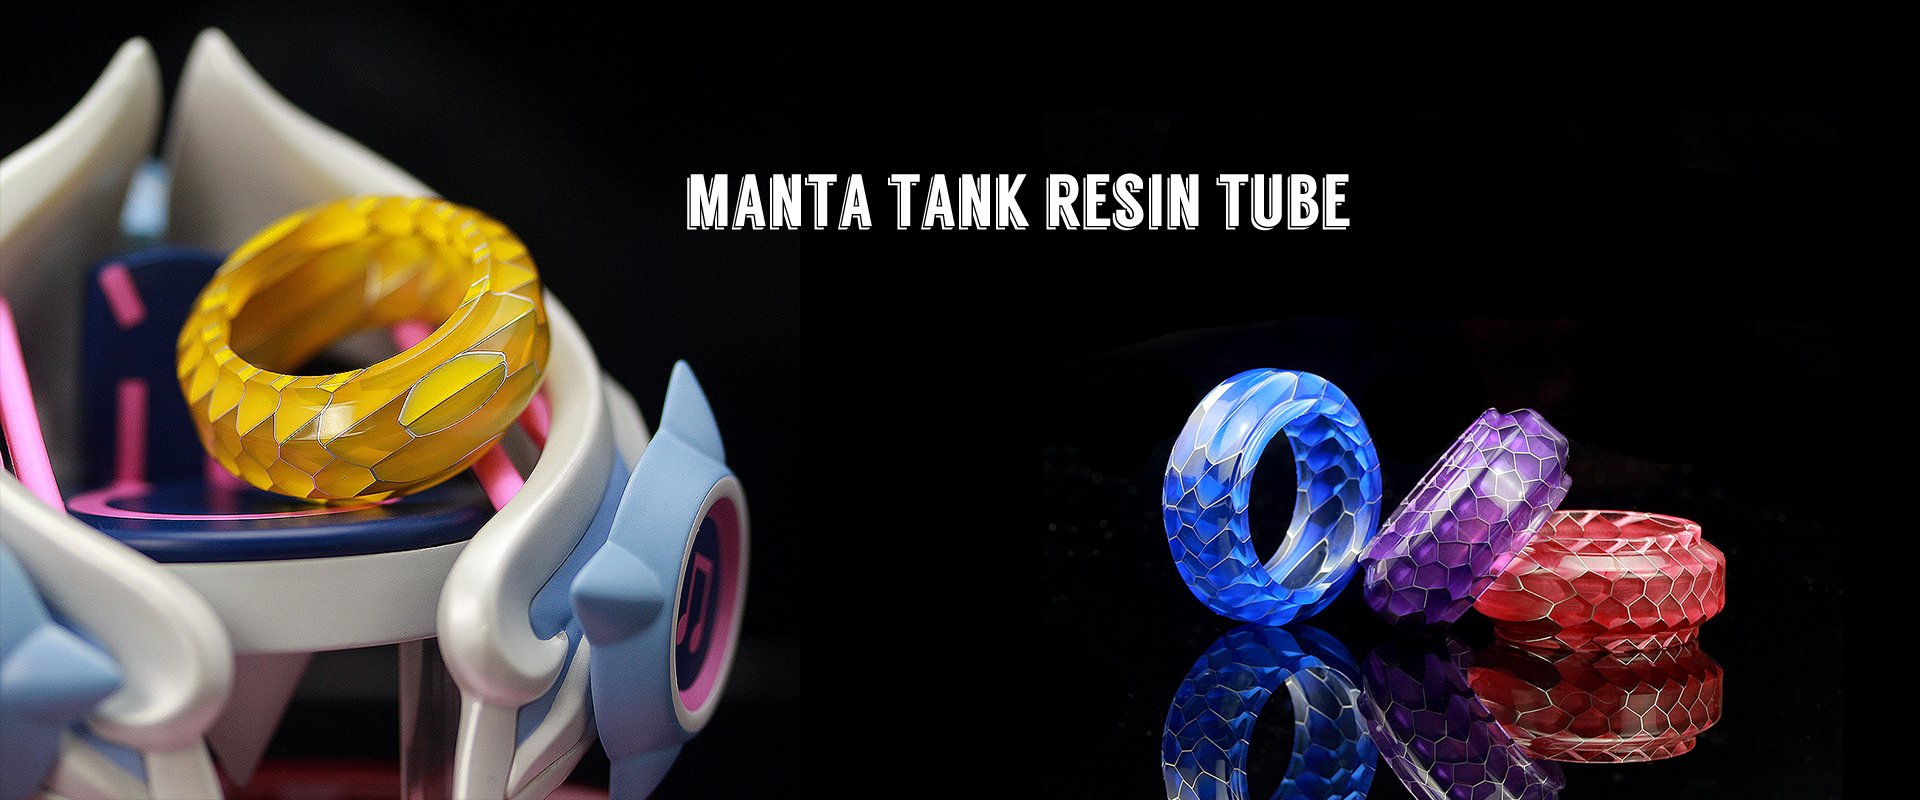 Advken Manta Tank Resin Glass Tube